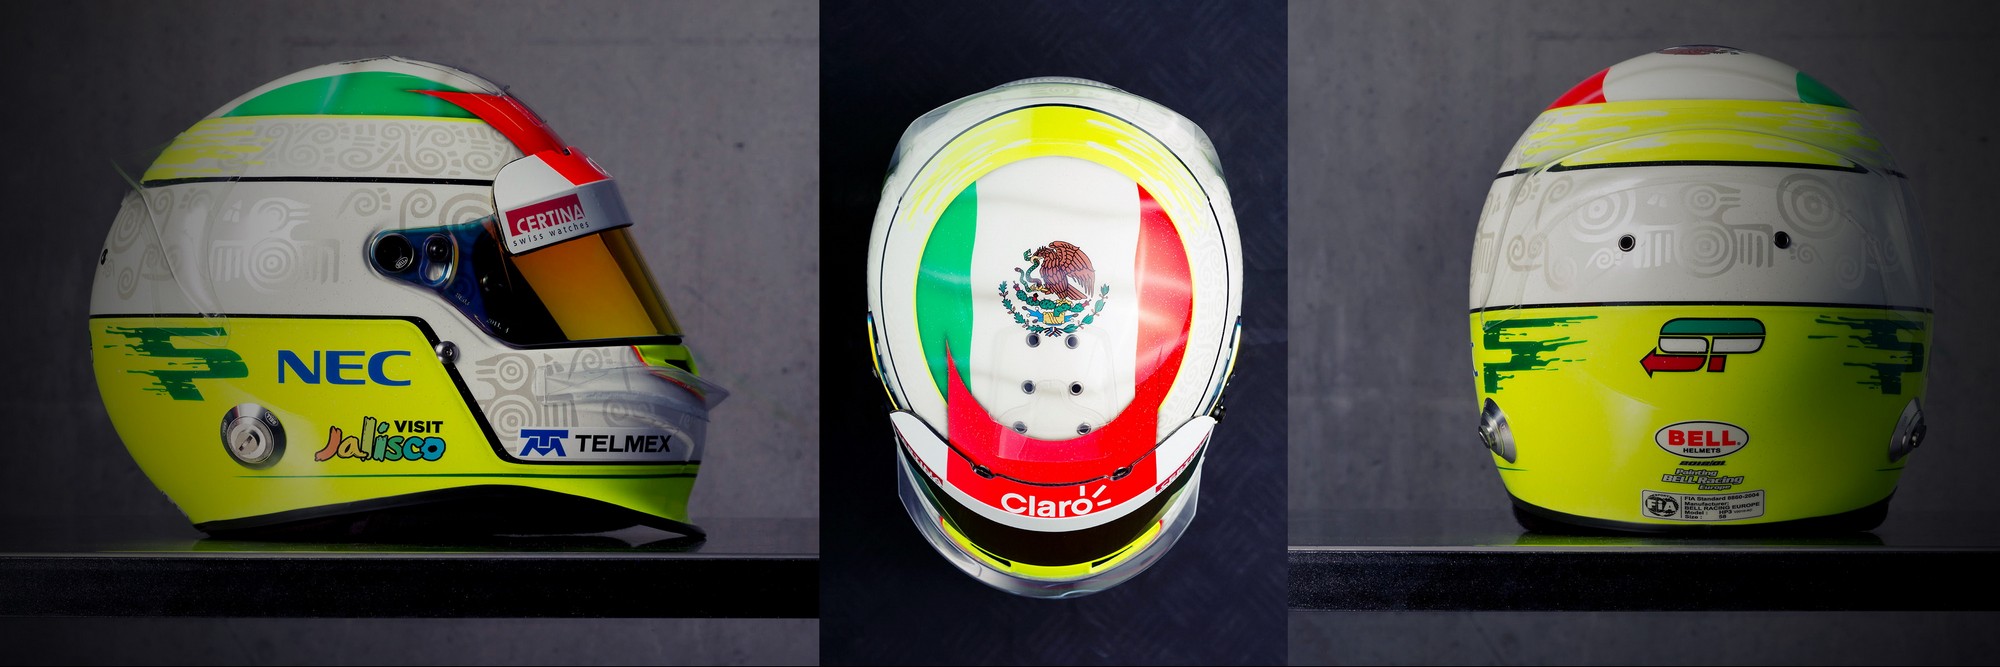 Шлем Серхио Переса на сезон 2012 года | 2012 helmet of Sergio Perez